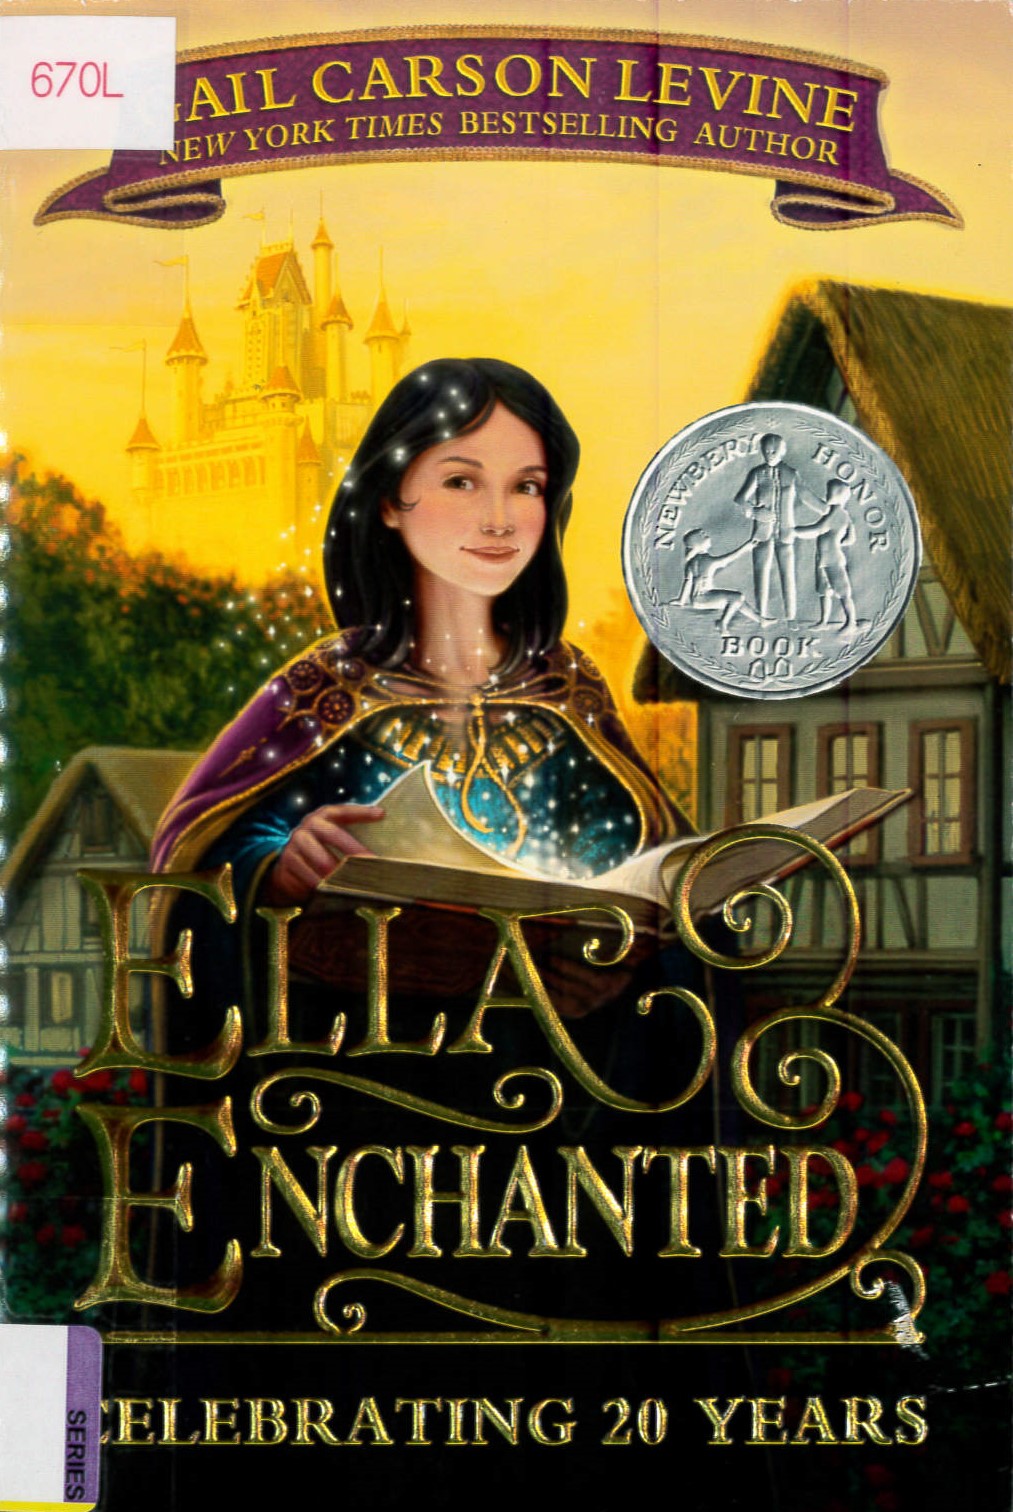 Ella enchanted /